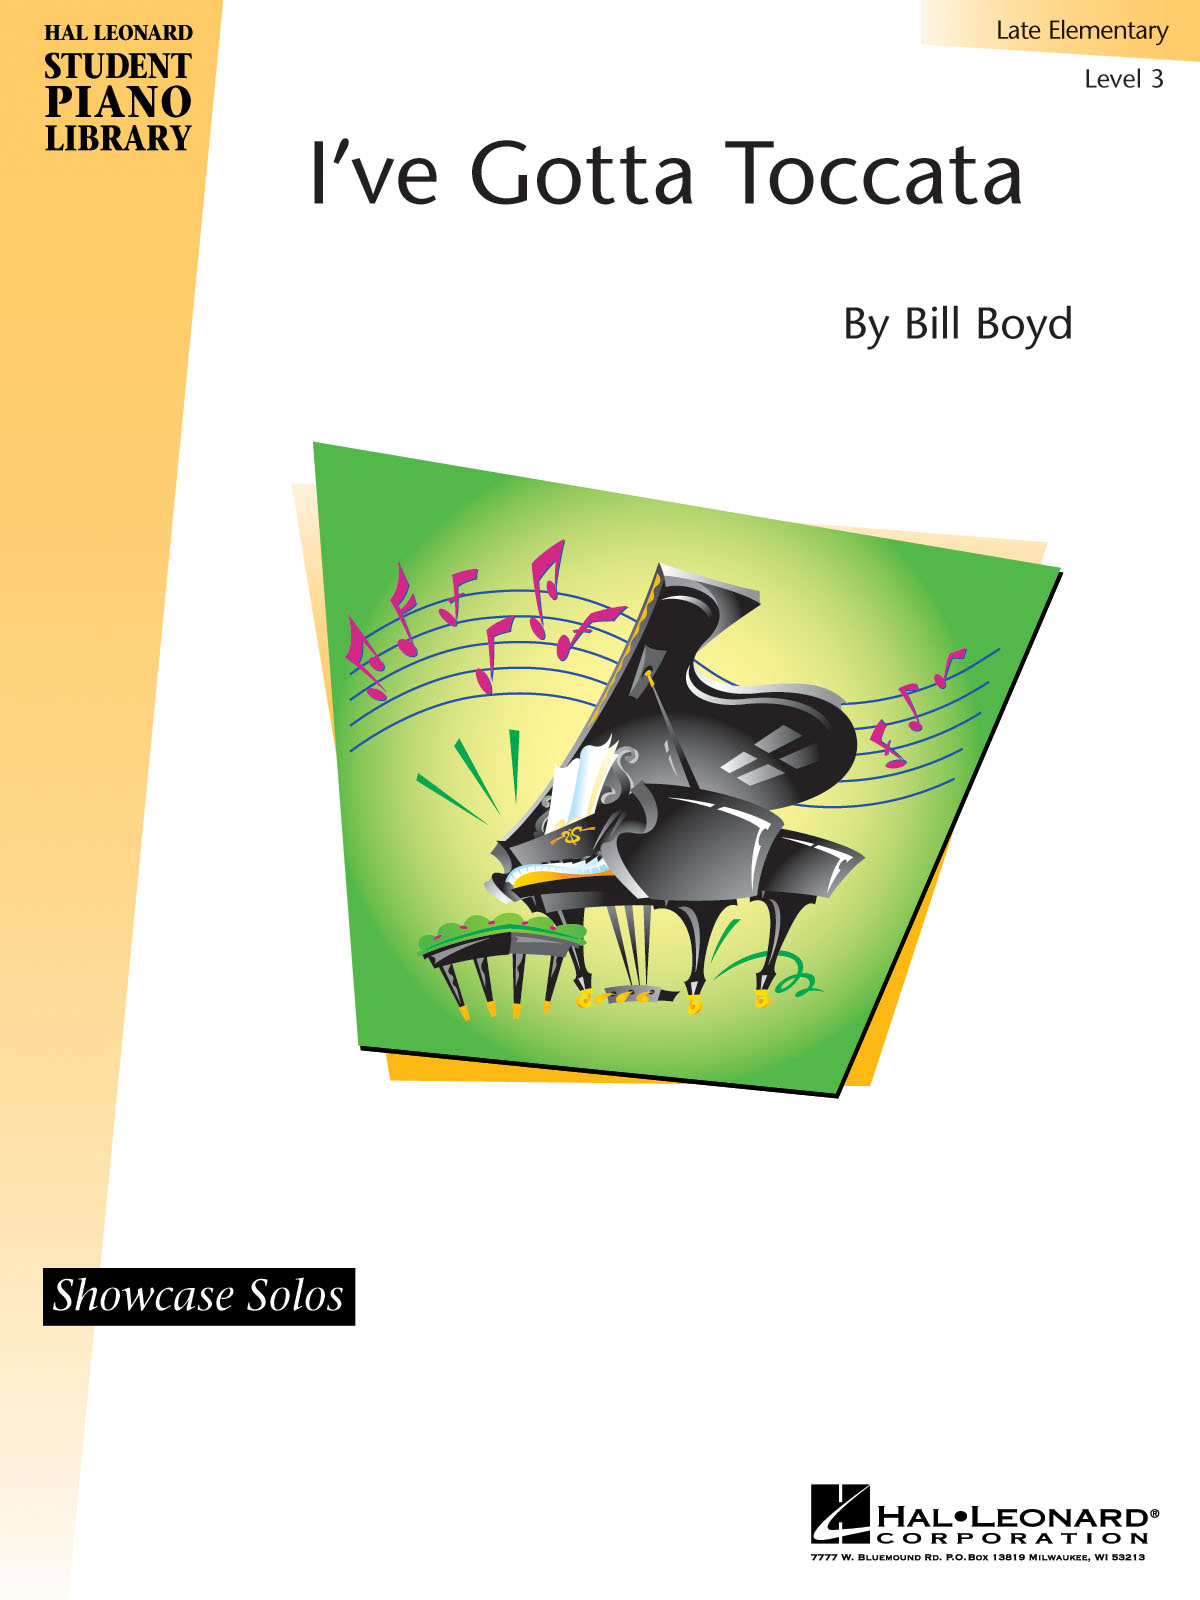 I’ve Gotta Toccata(Hal Leonard Student Piano Library Showcase Solo Level 3/Late Elementary)